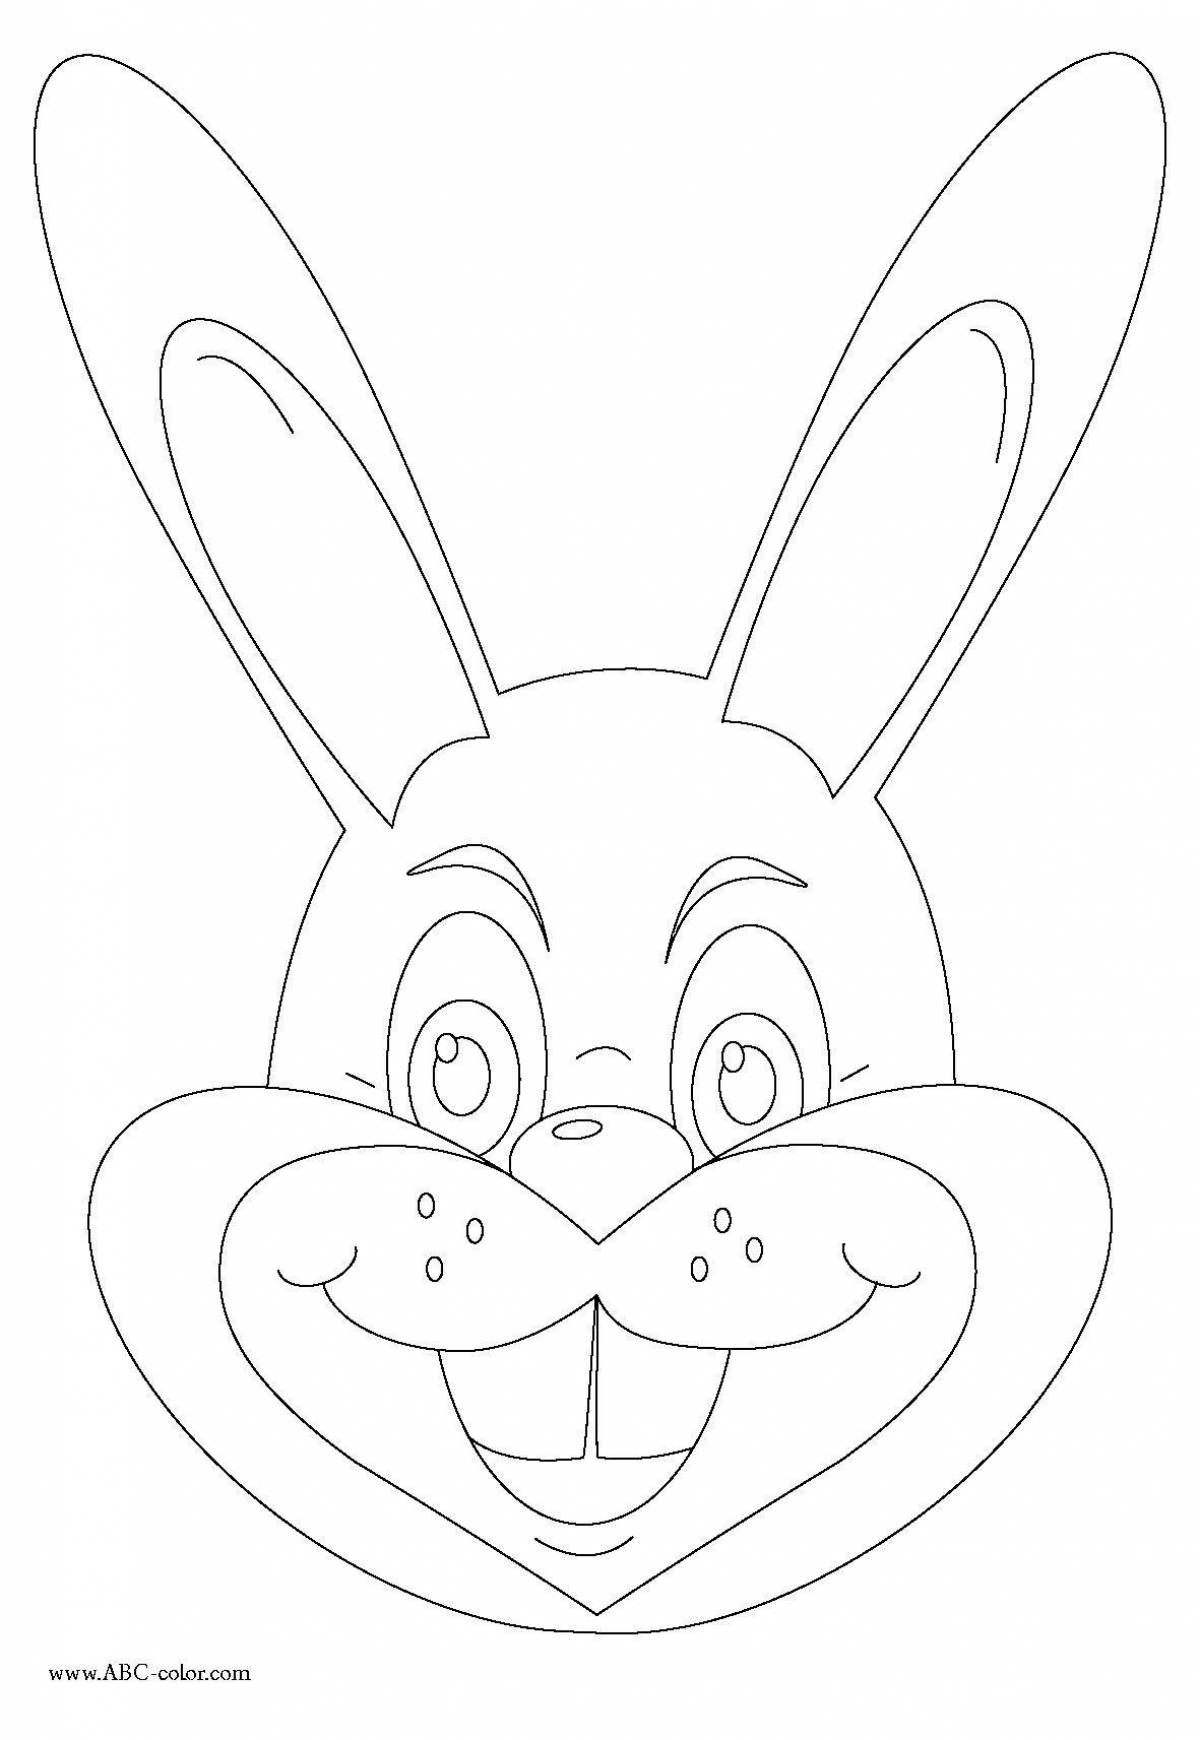 Юмористическая раскраска голова кролика